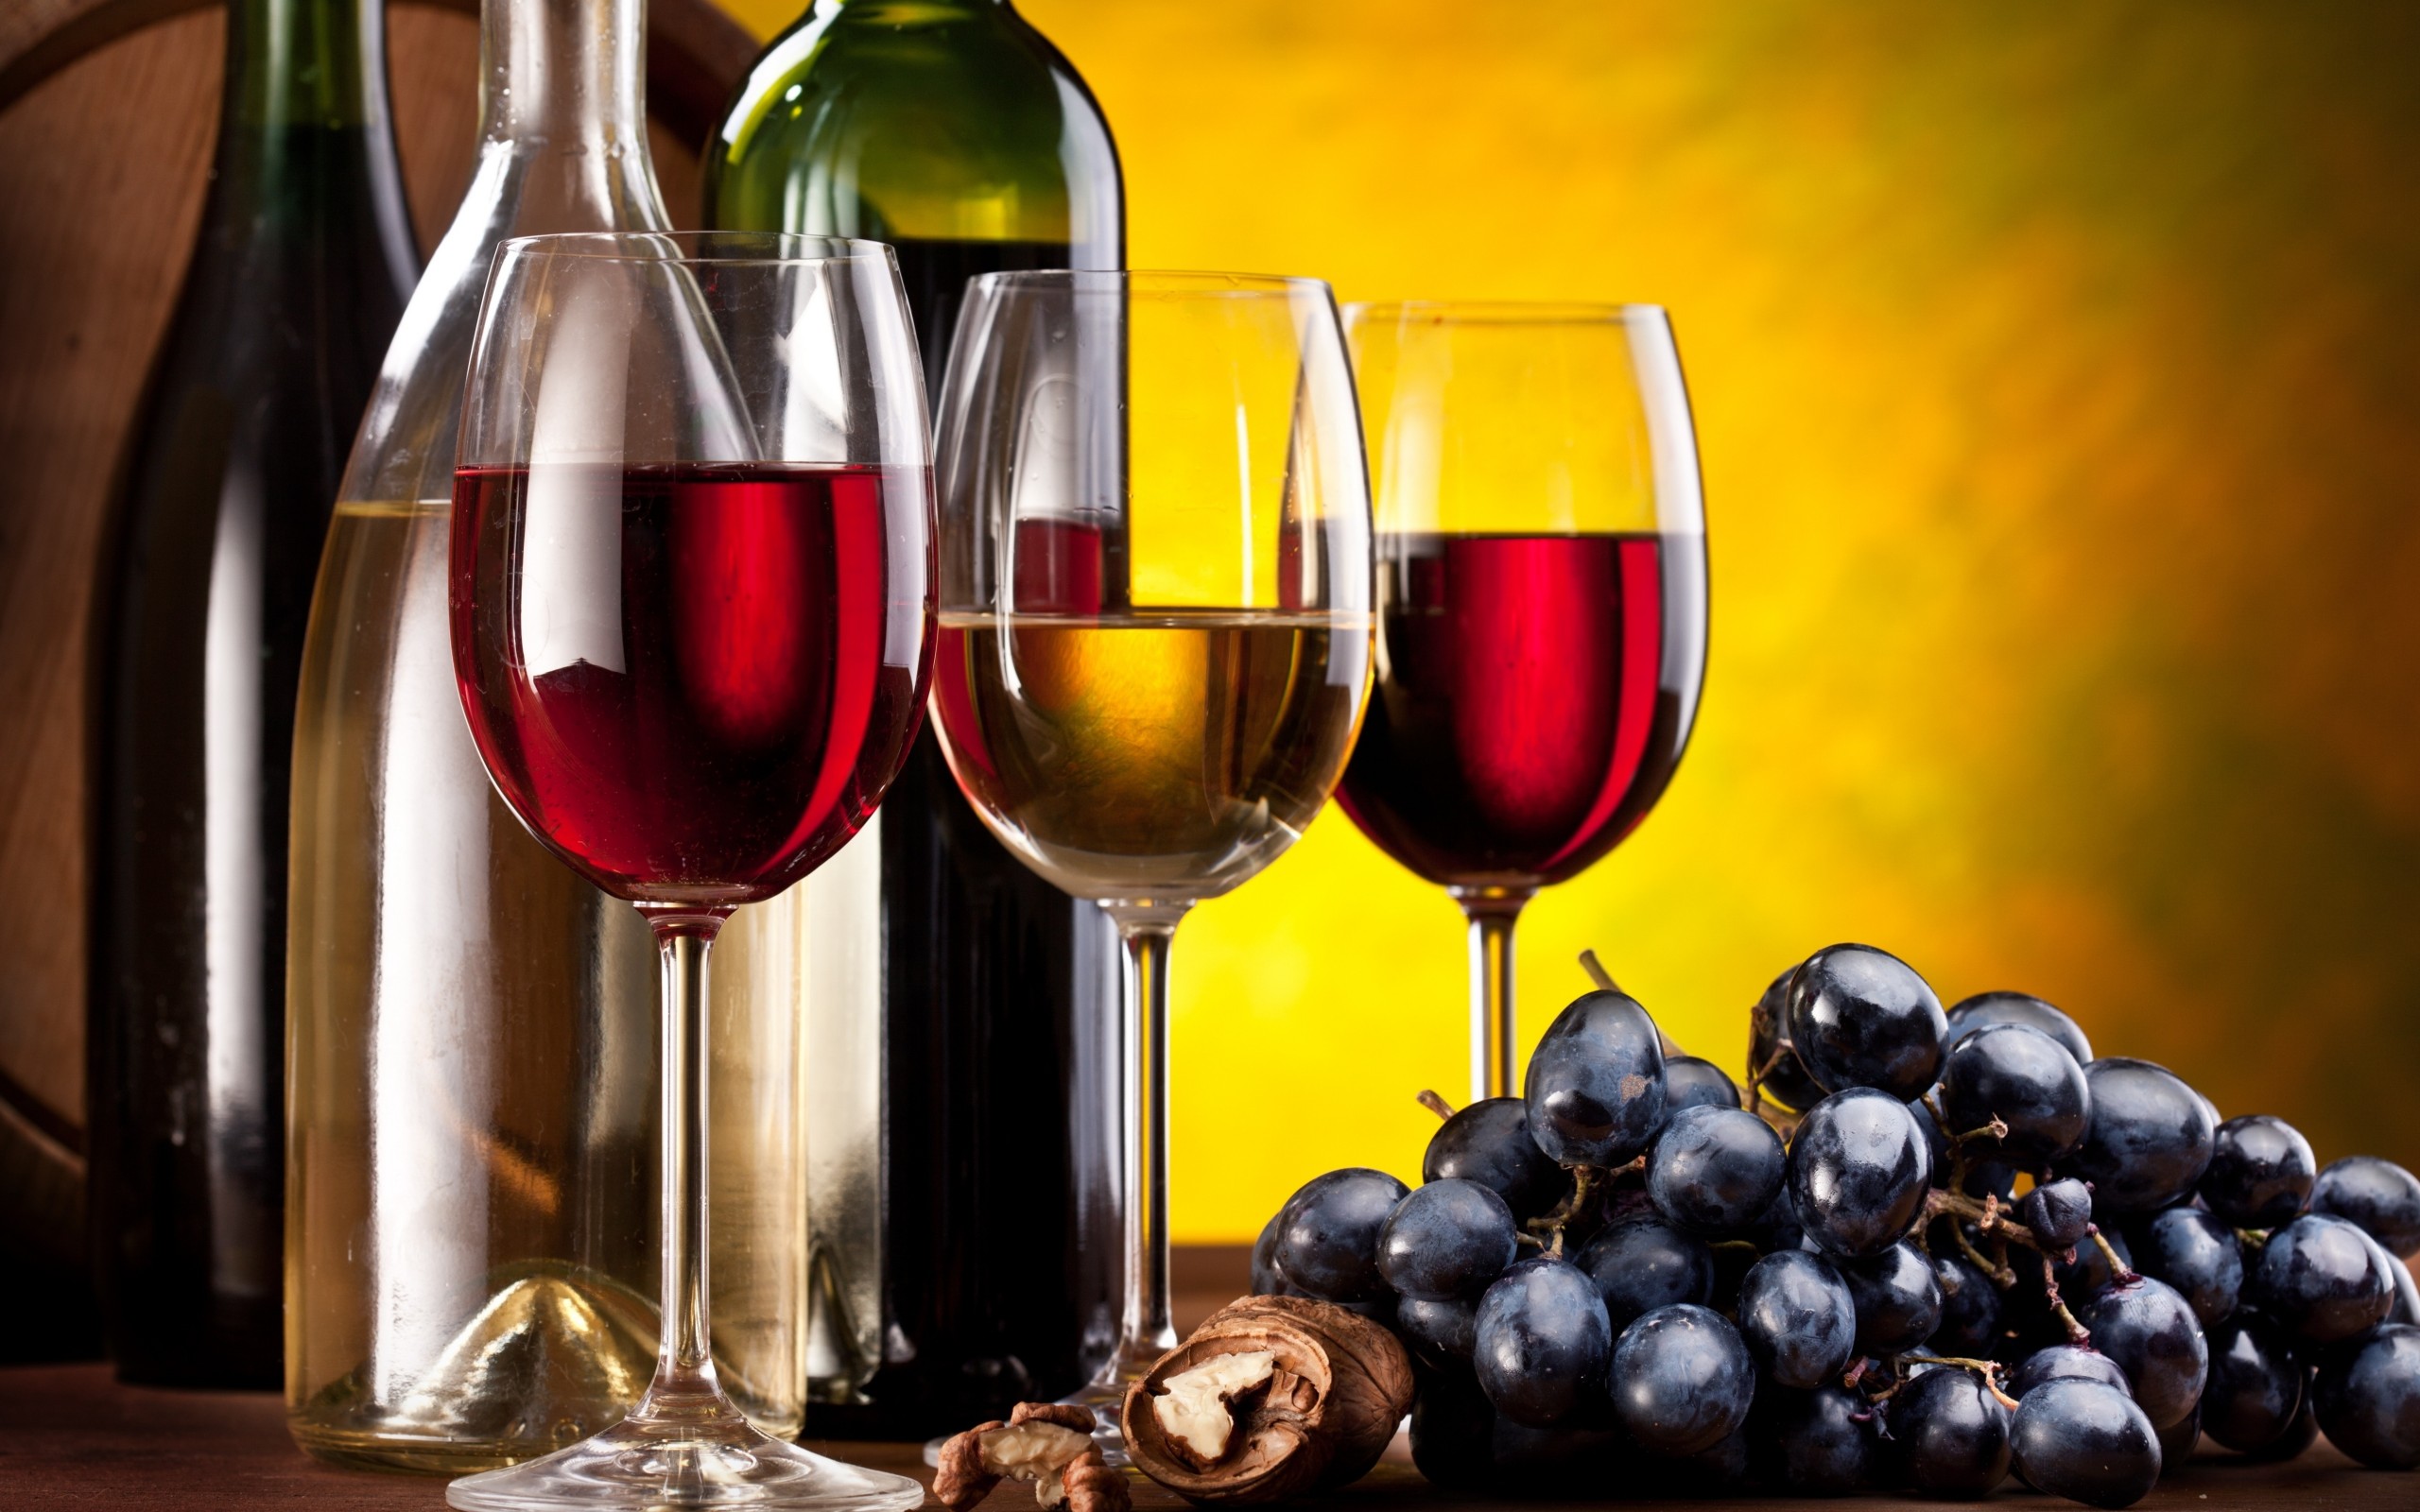 wine wallpaper hd,wine glass,stemware,drink,bottle,alcohol